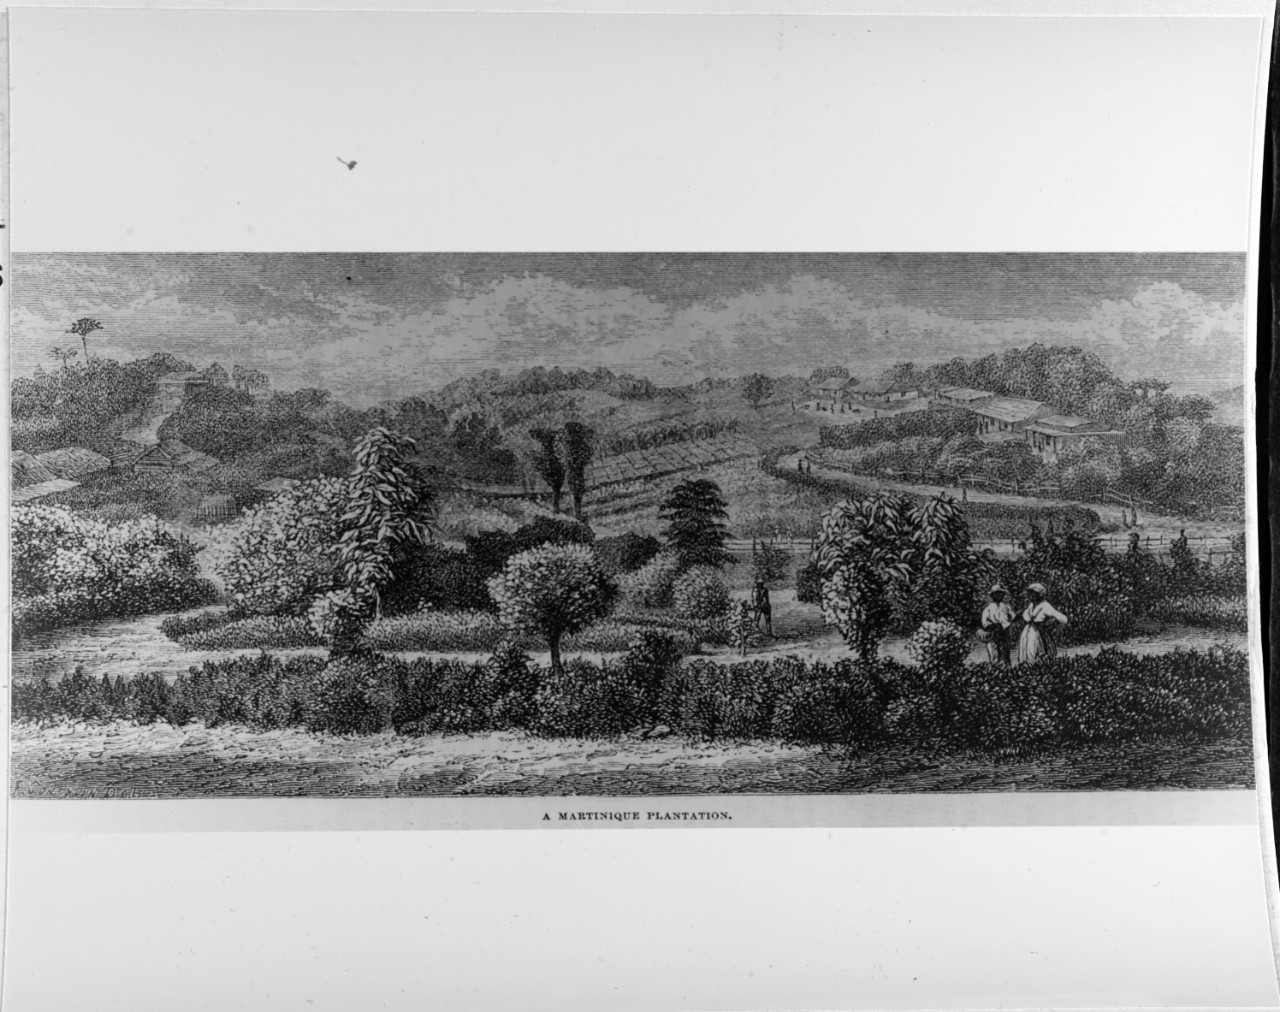 A Martinique Plantation